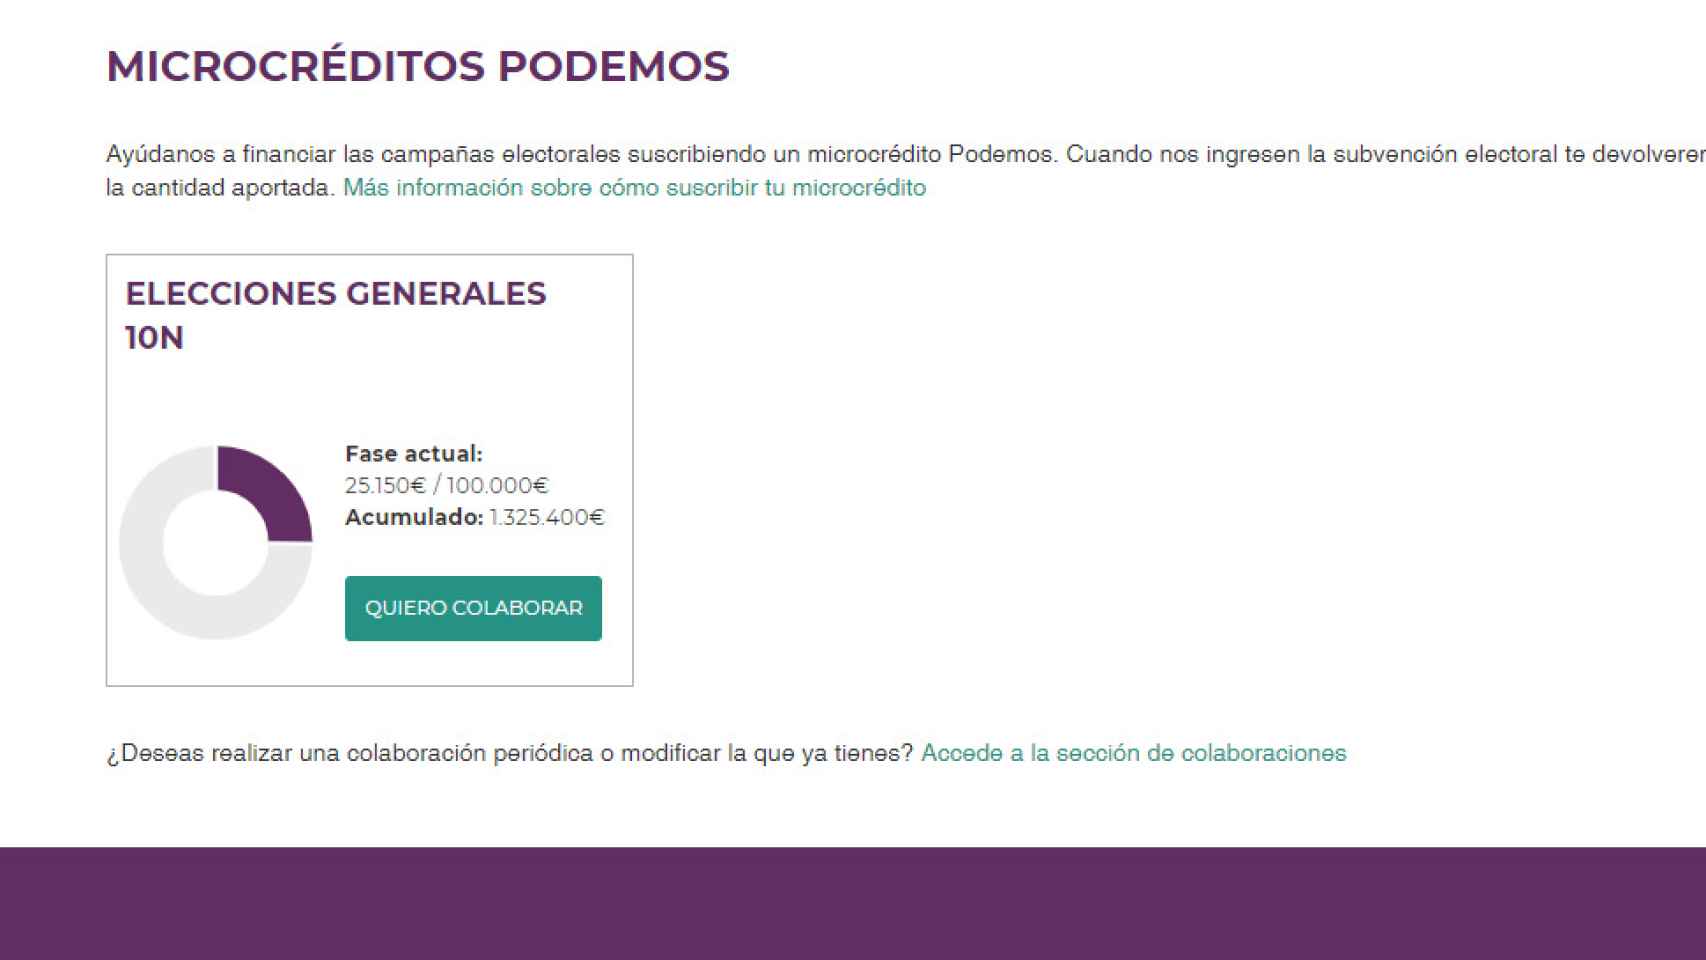 Reporte de la recaudación de Podemos en microcréditos desde el 25 de septiembre.